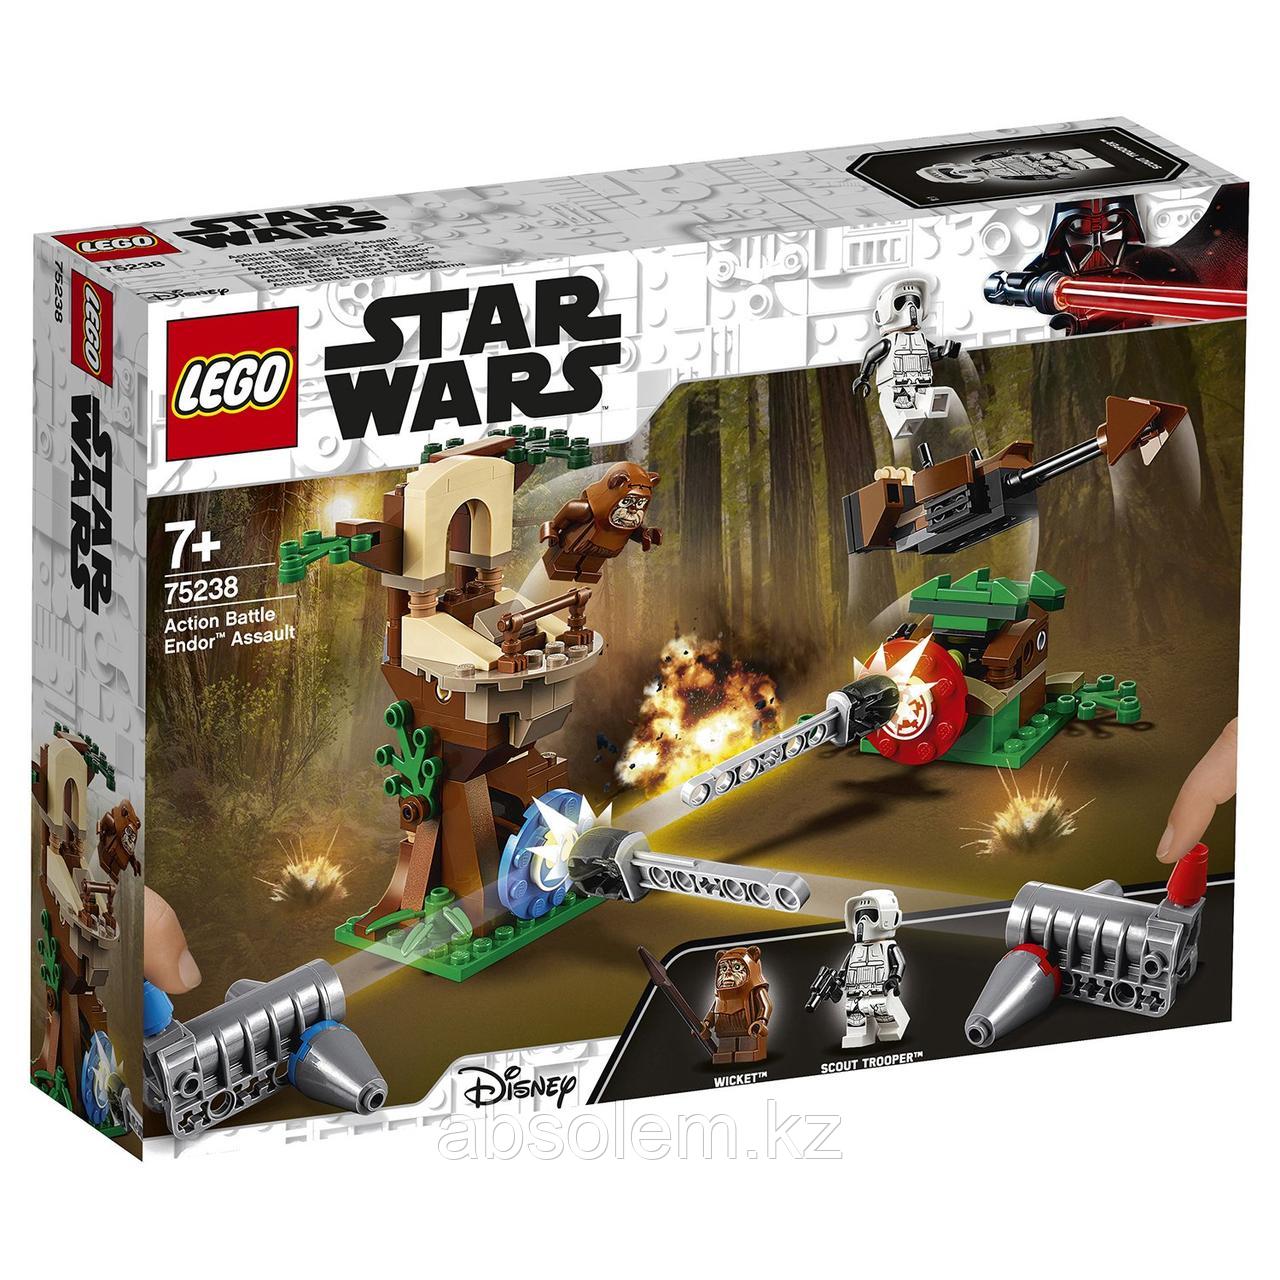 LEGO 75238 Star Wars Нападение на планету Эндор